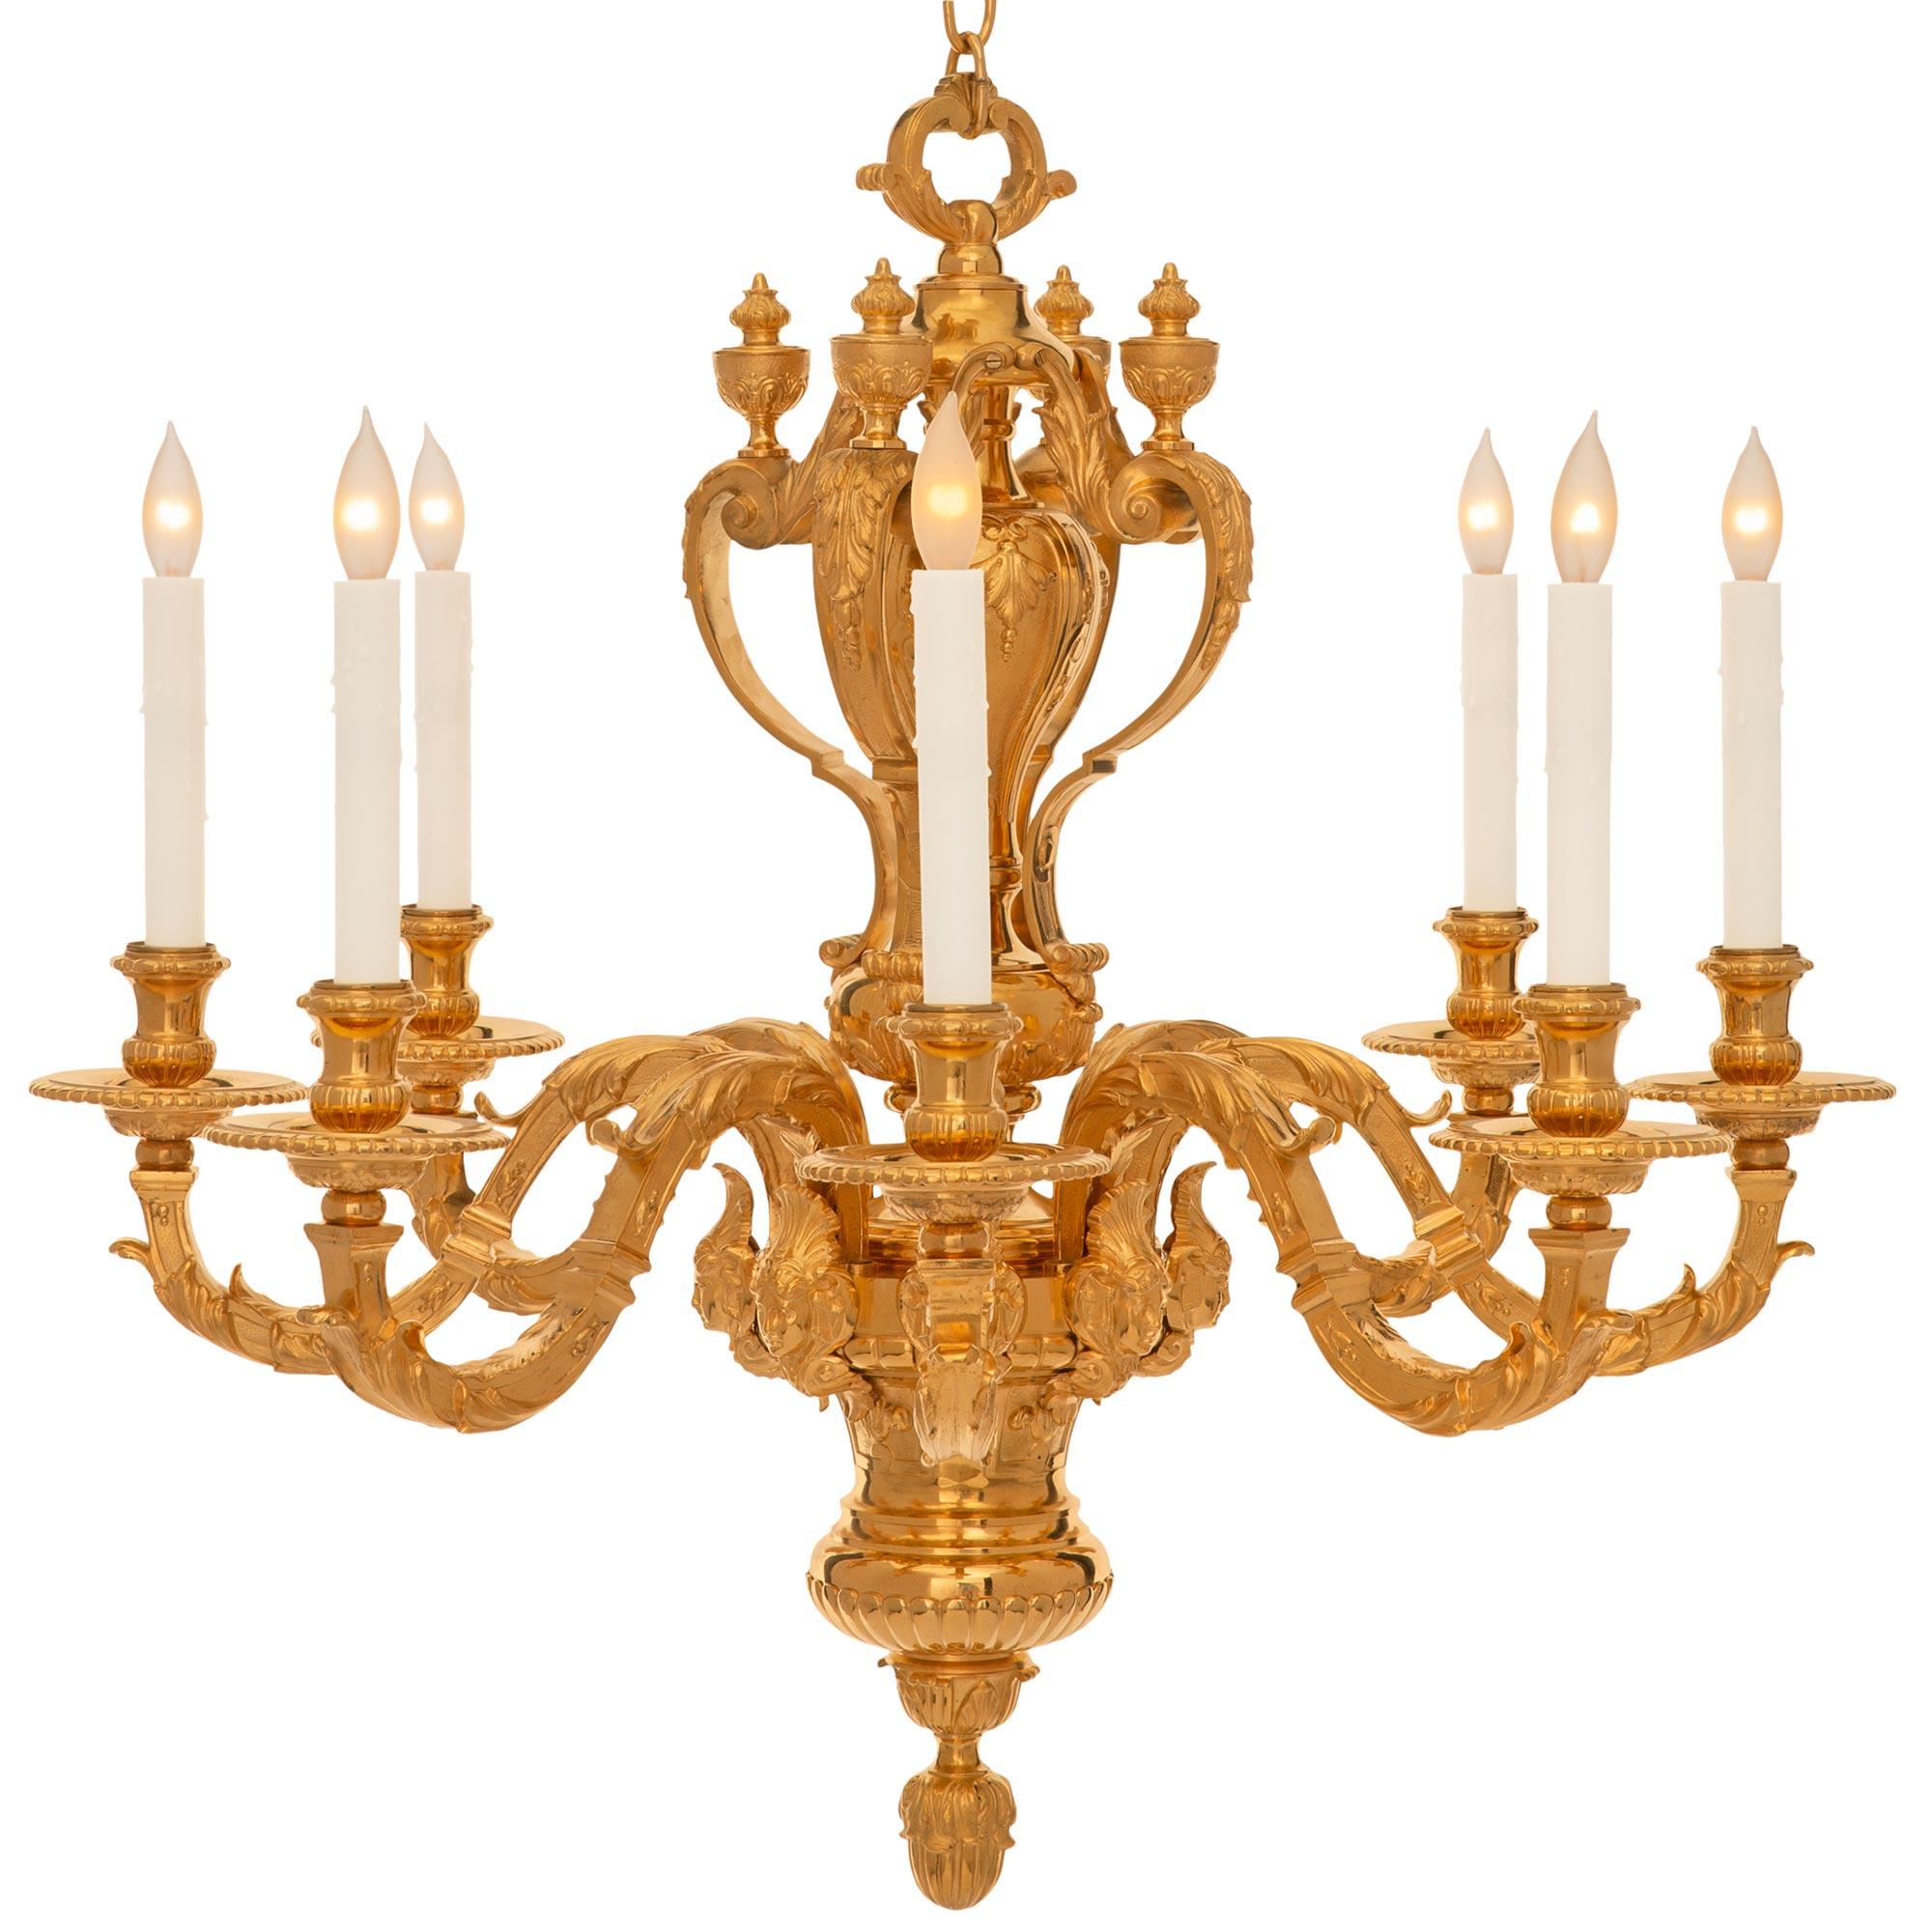 Un très impressionnant lustre français du 19ème siècle, de style Louis XVI, en bronze doré. Le lustre à huit bras est centré par un remarquable fleuron inférieur feuillagé sous un motif en cannelure et le corps élégamment incurvé est décoré de